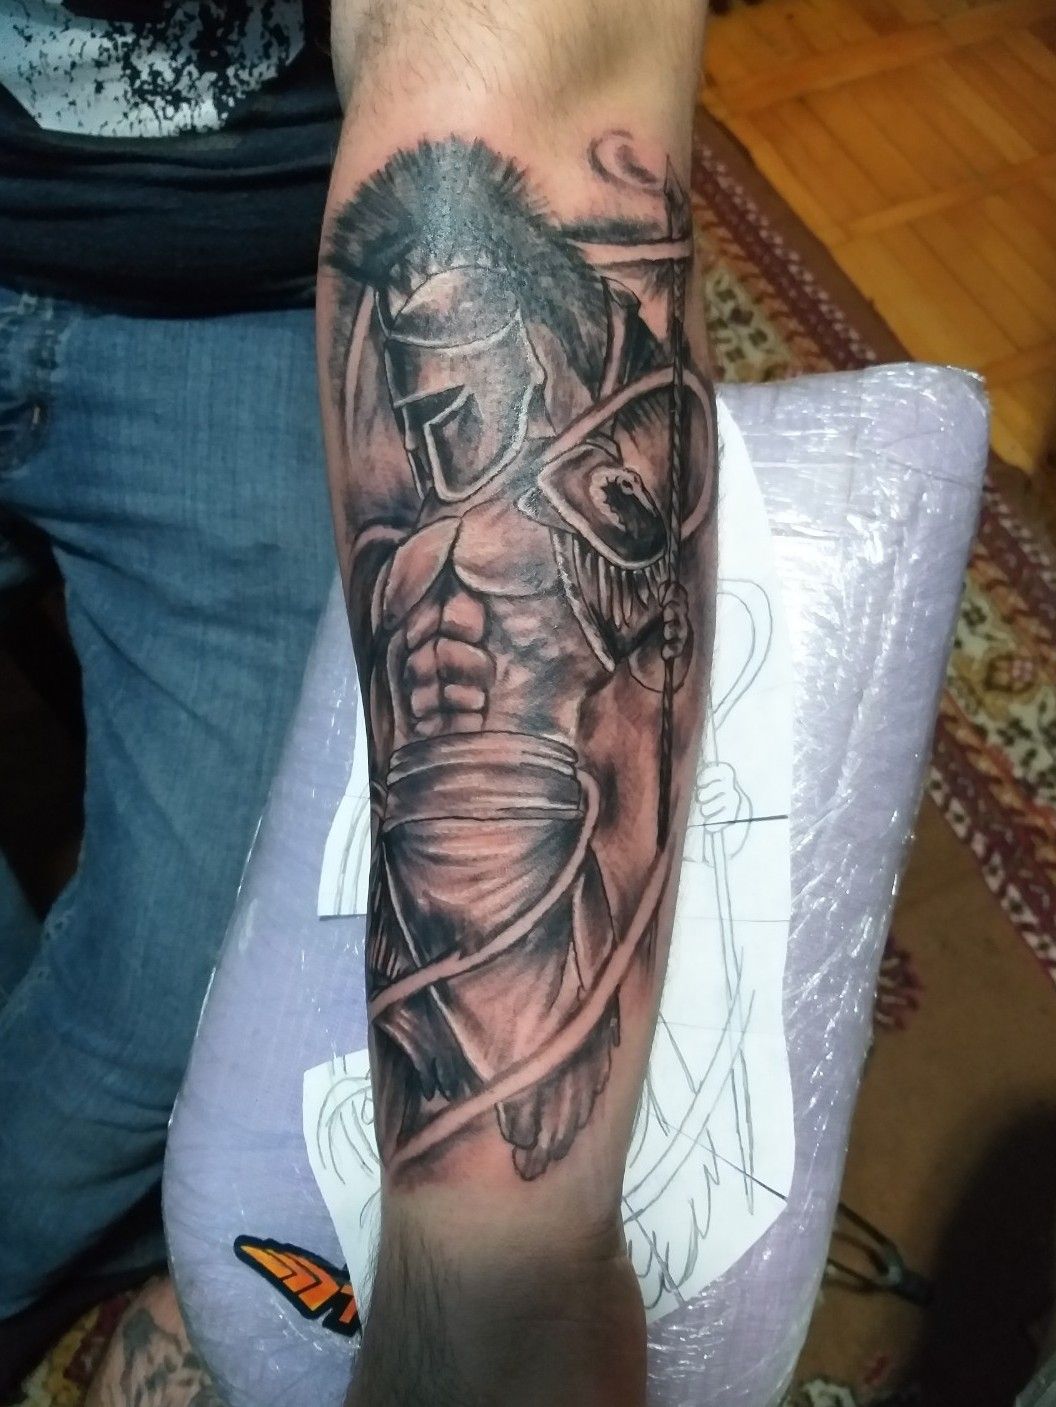 WarriorSpartan tattoo  Jazzink Tattoos  Piercing Studio  Facebook